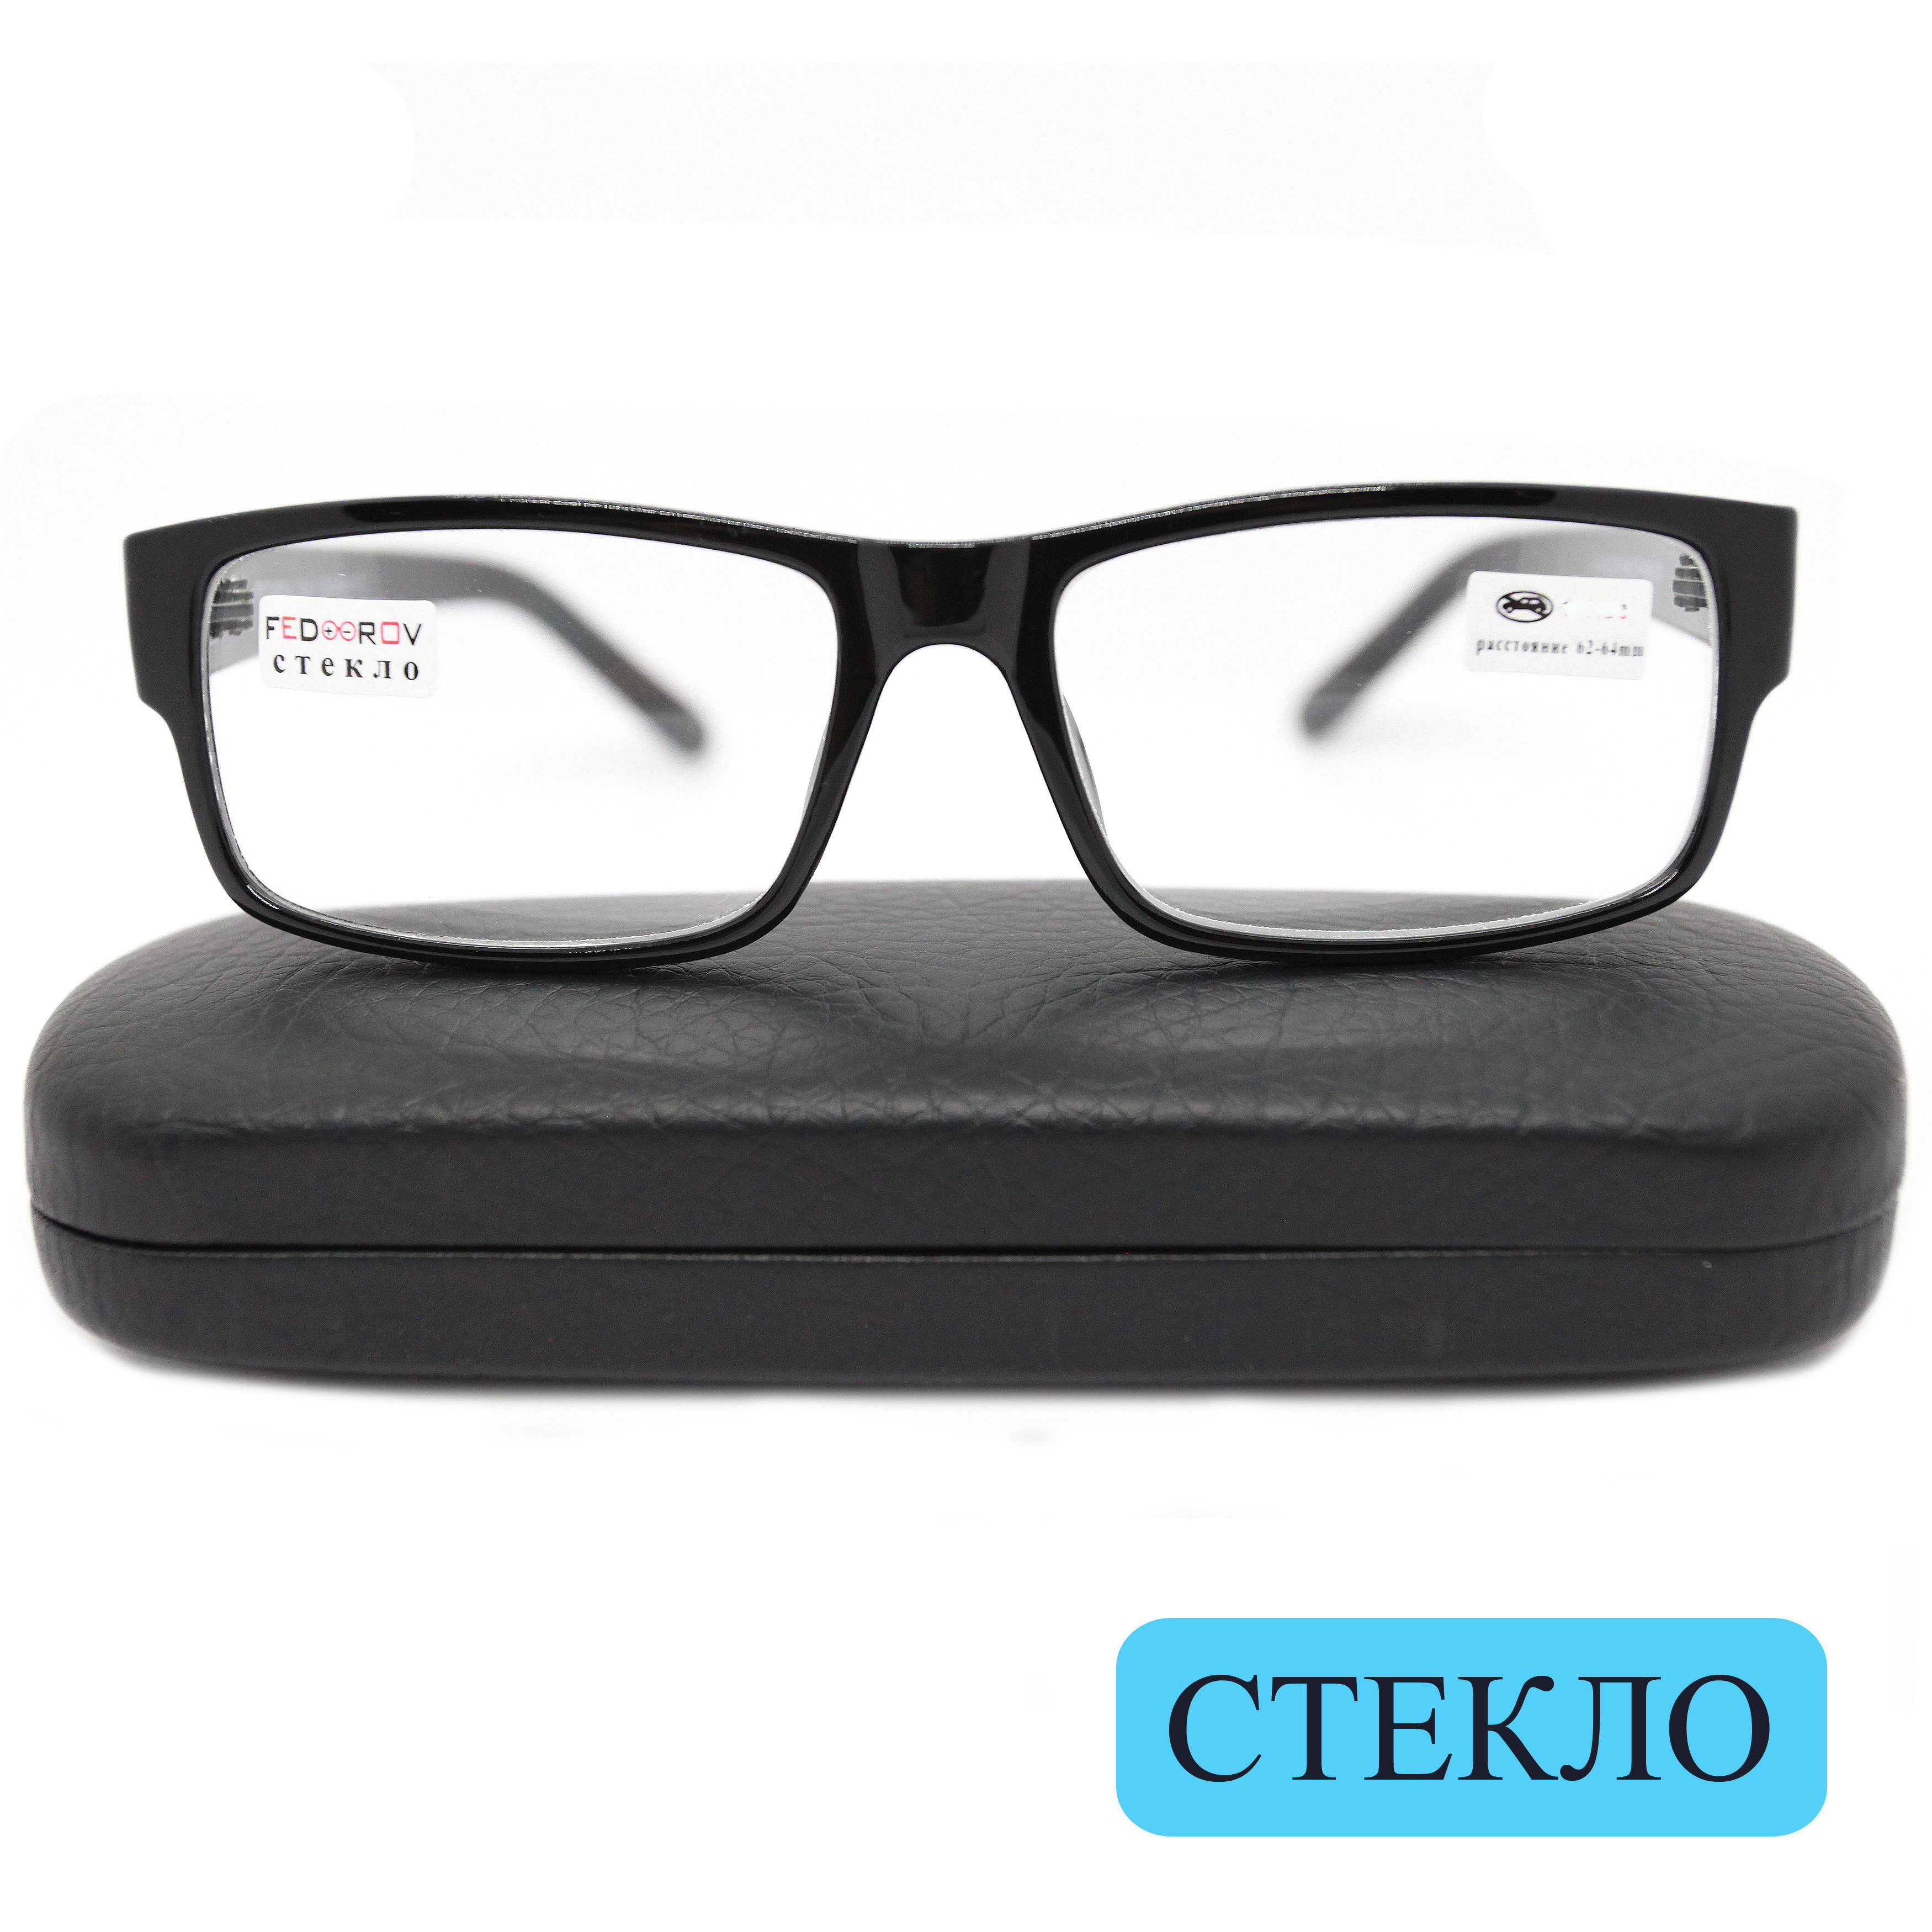 Готовые очки Fedrov 2722, со стеклянной линзой, +3,50, c футляром, черный, РЦ 62-64